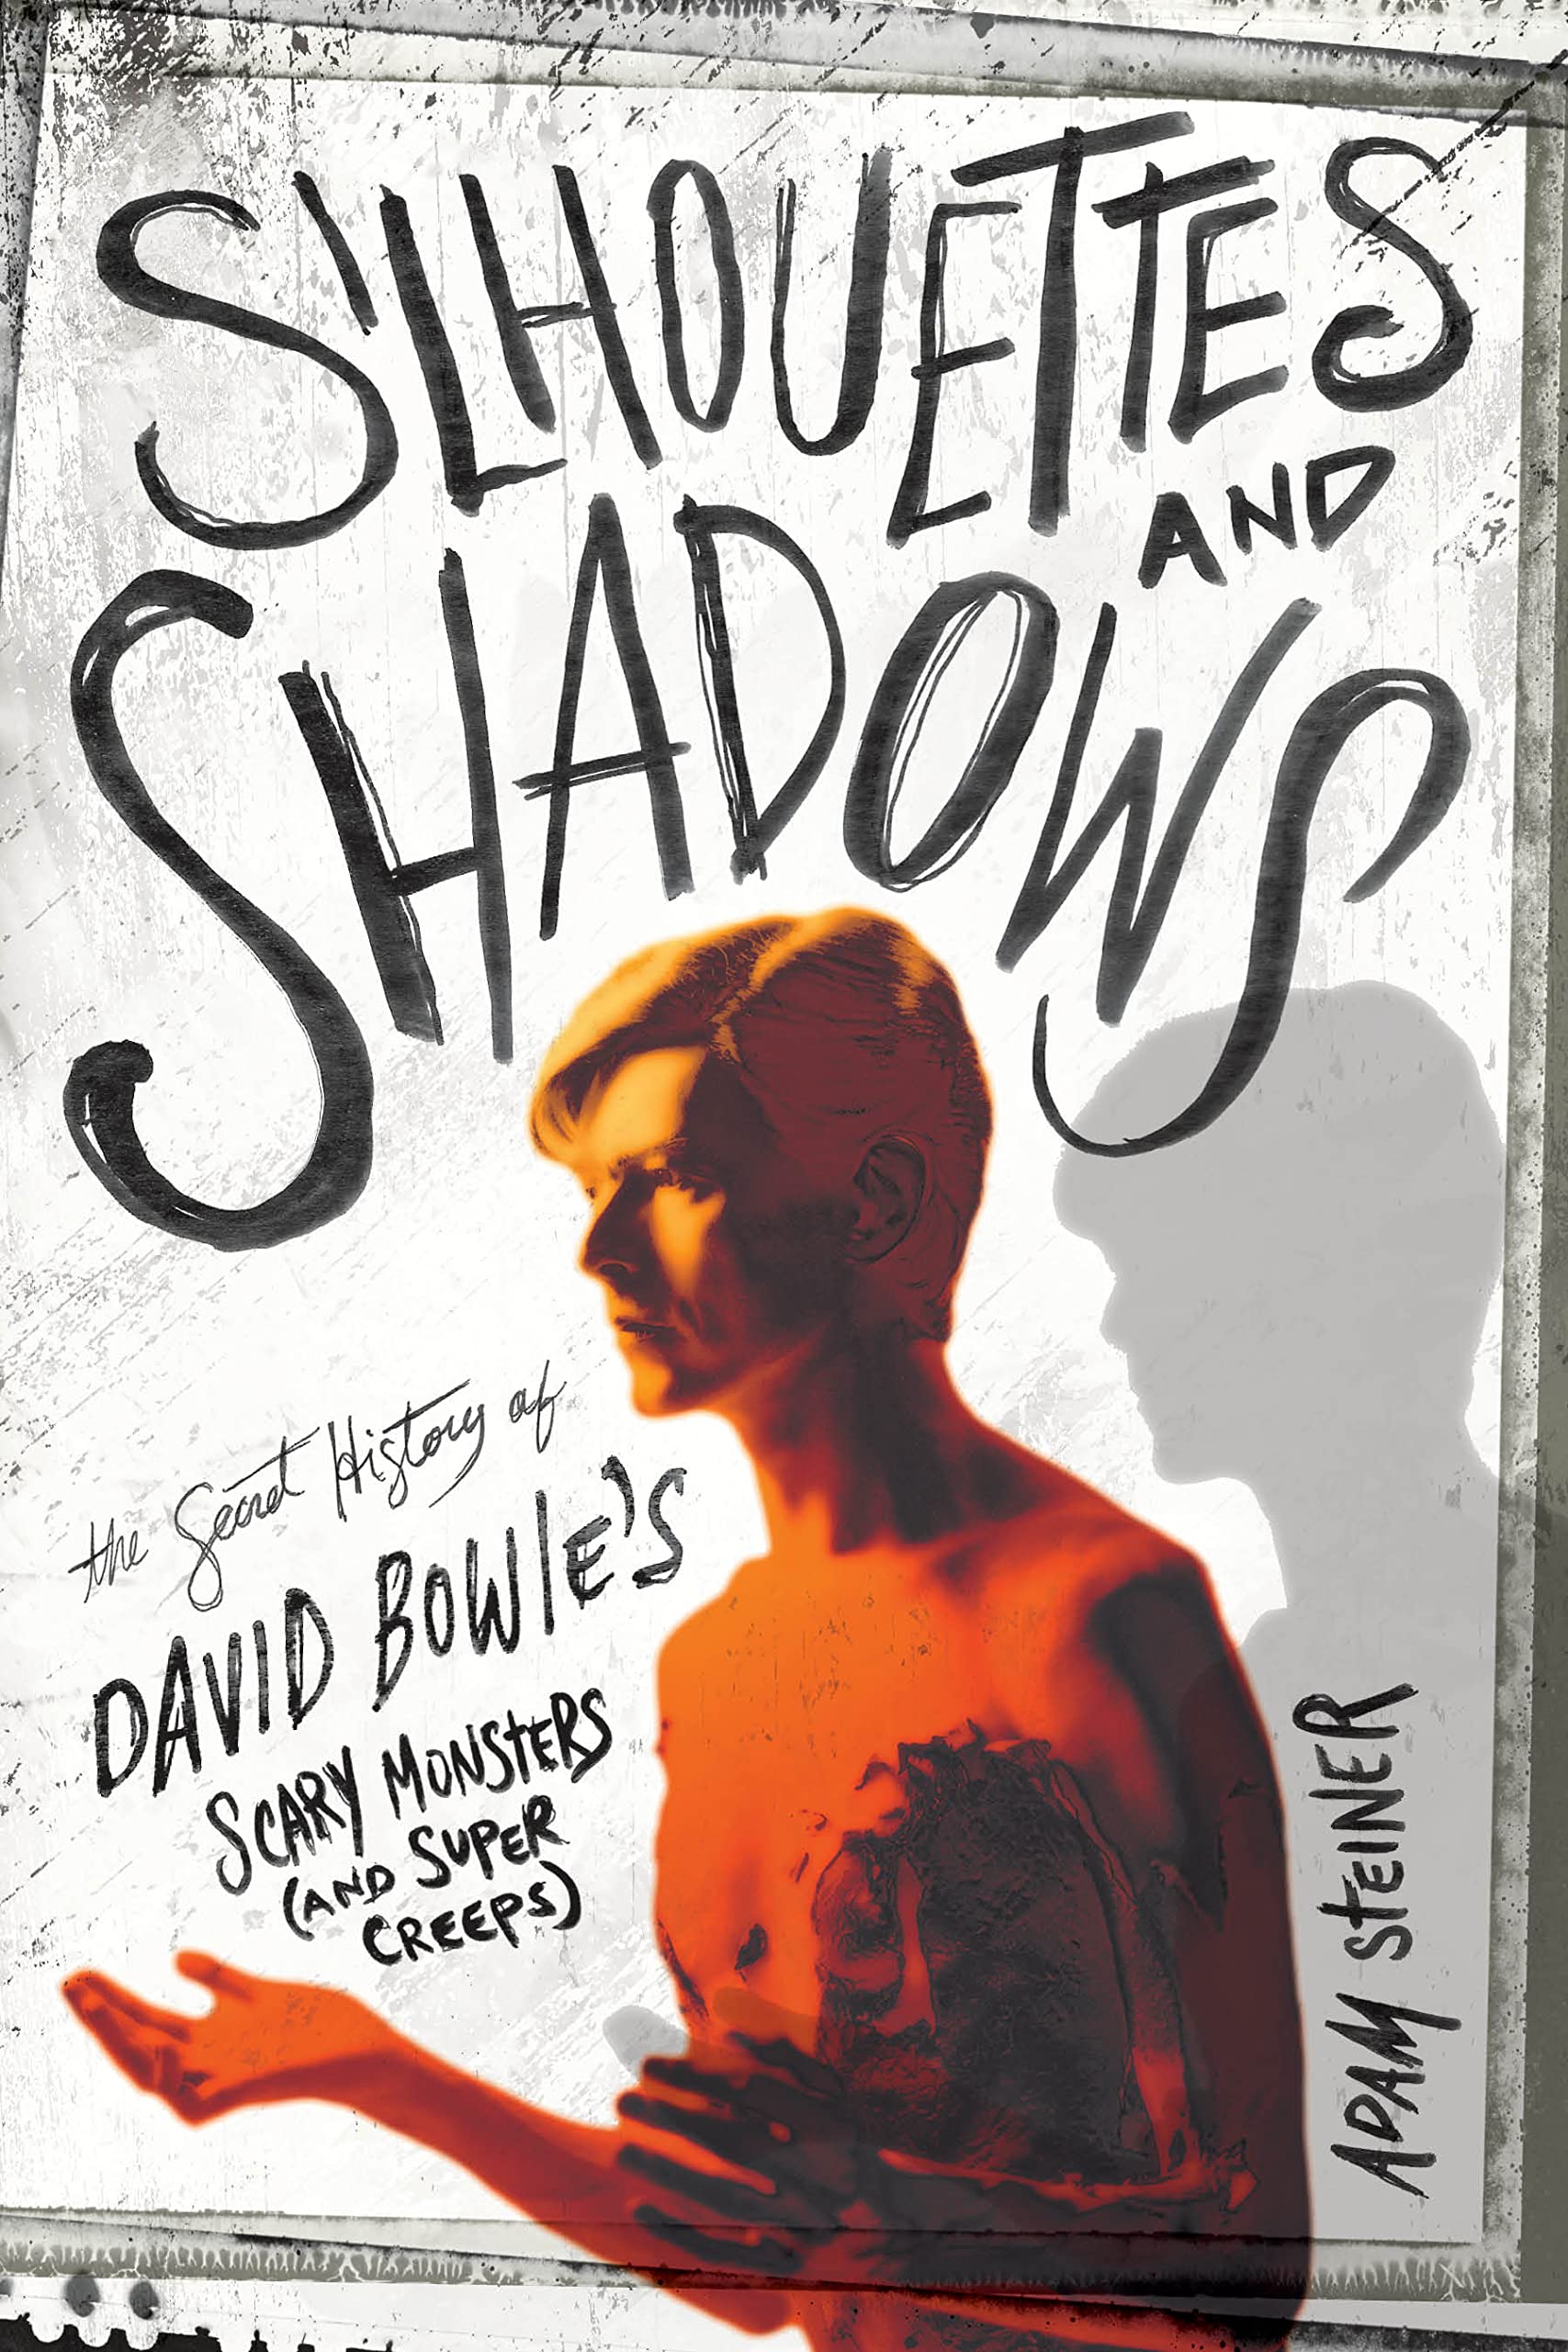 David Bowie books (@DavidBowieBooks) / Twitter